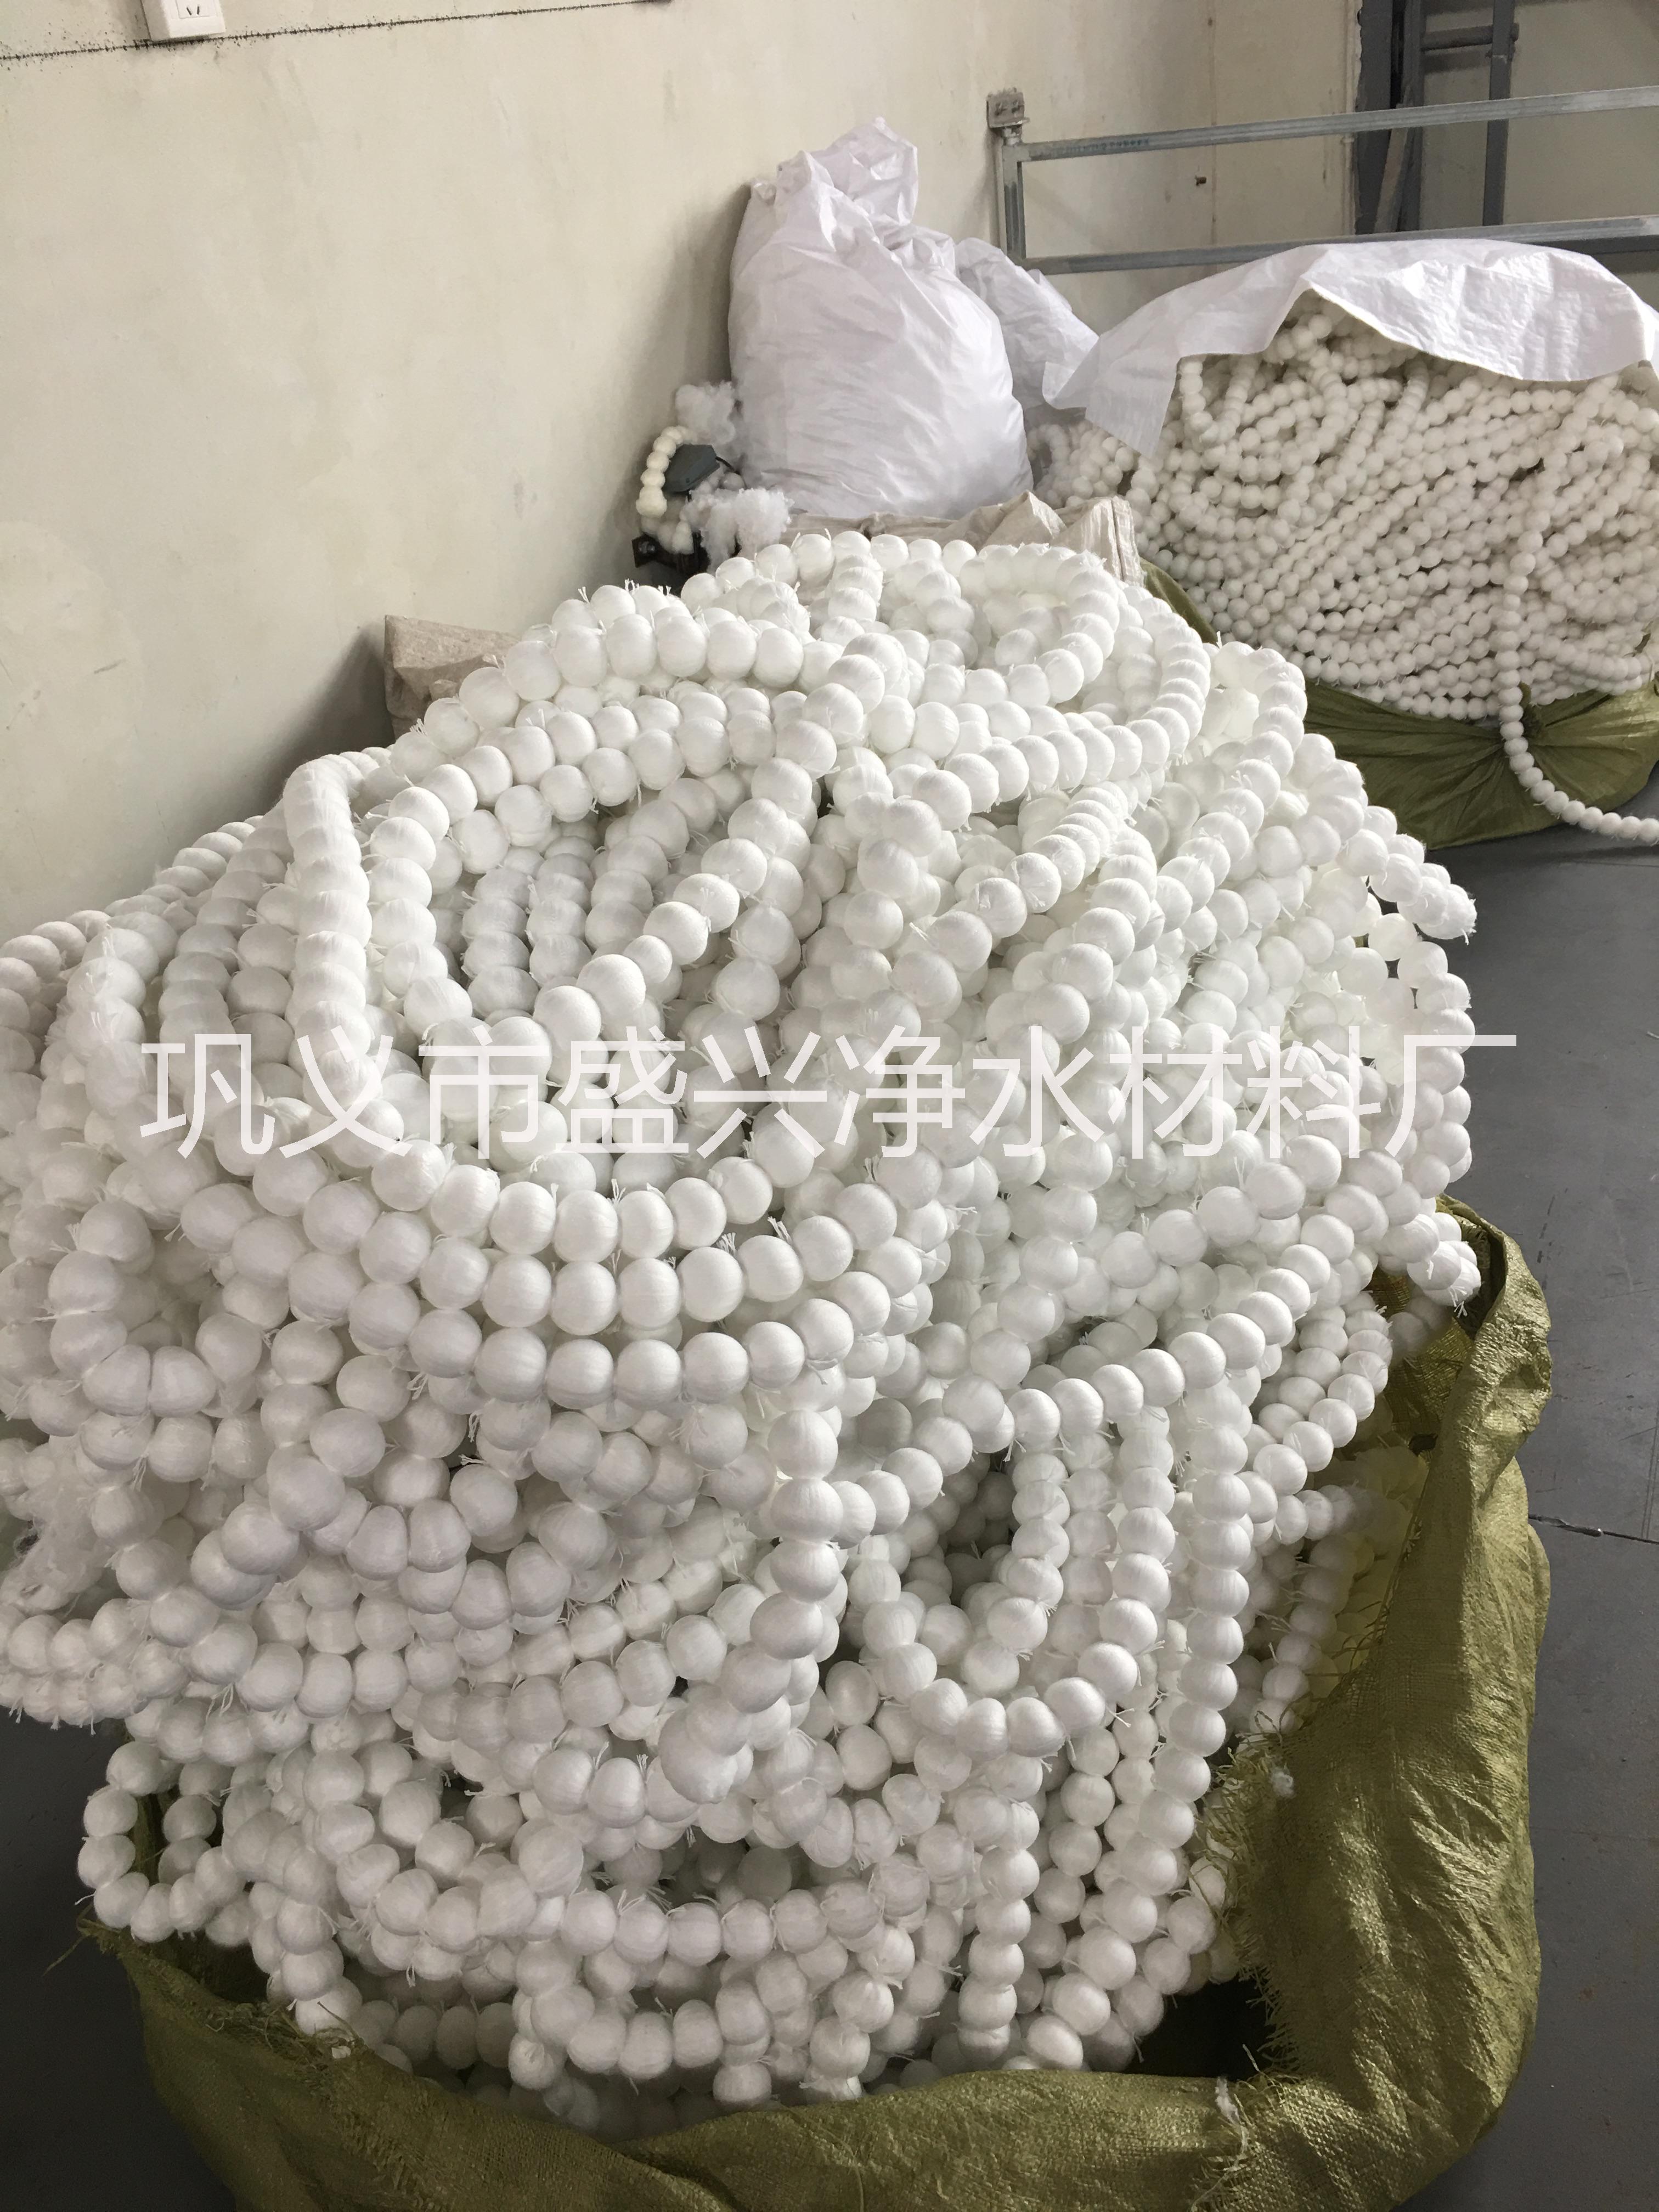 郑州市纤维球填料厂家厂家供应精细过滤纤维球填料 循环水净化纤维球型填料 纤维球填料厂家